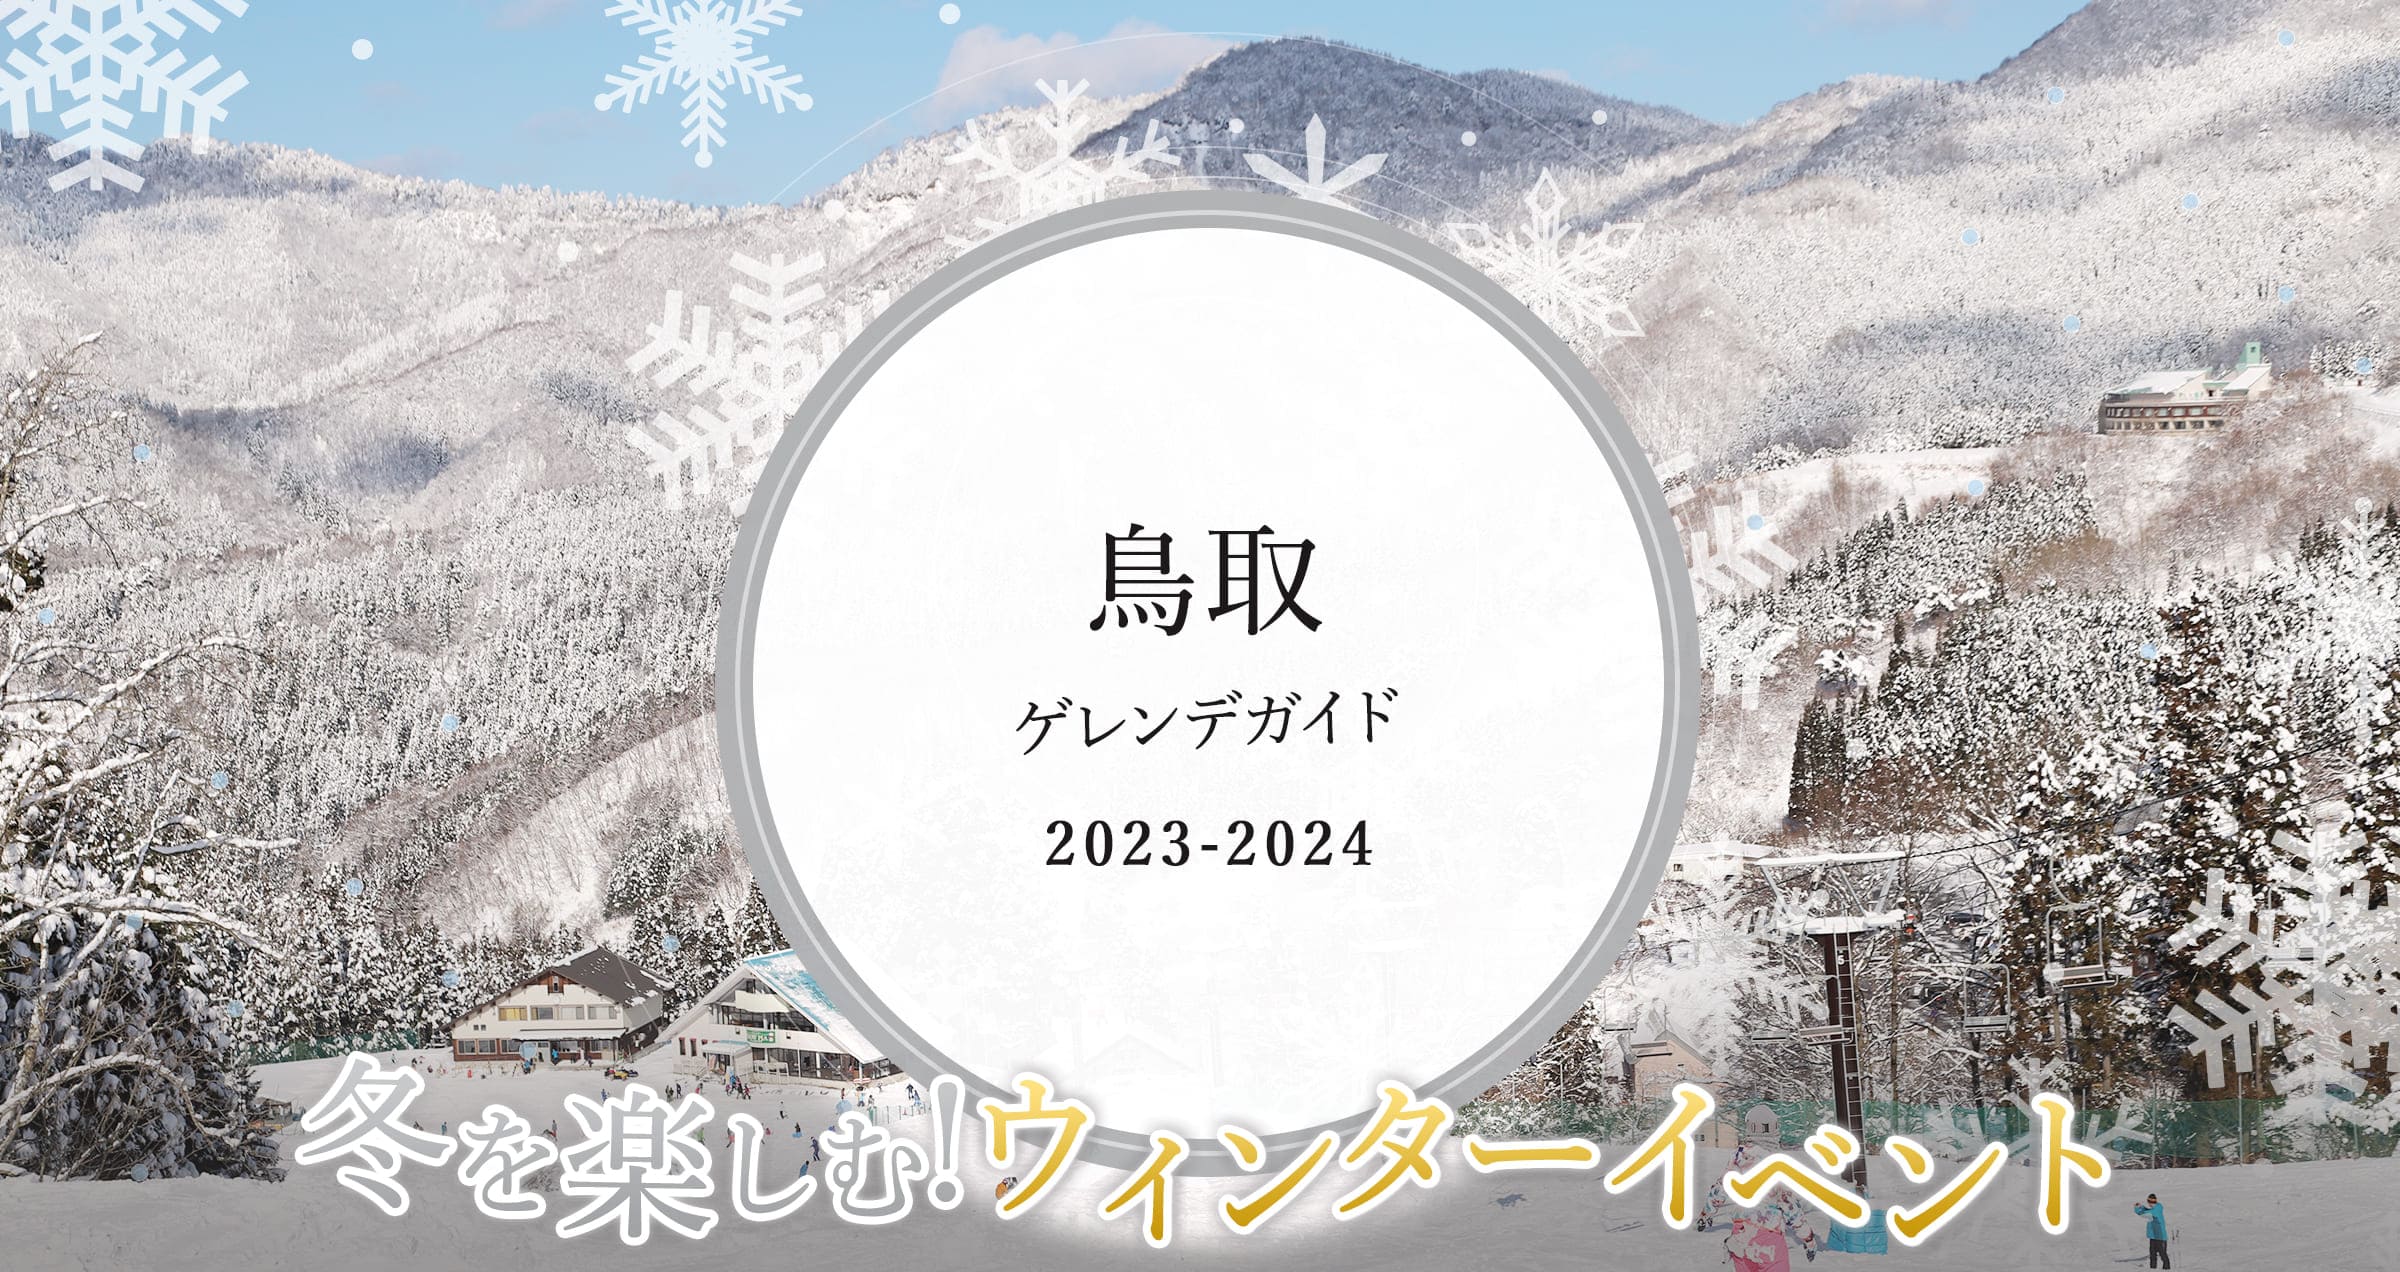 鳥取 イルミネーション & ゲレンデ ガイド 2021 冬を楽しむ!ウィンターイベント